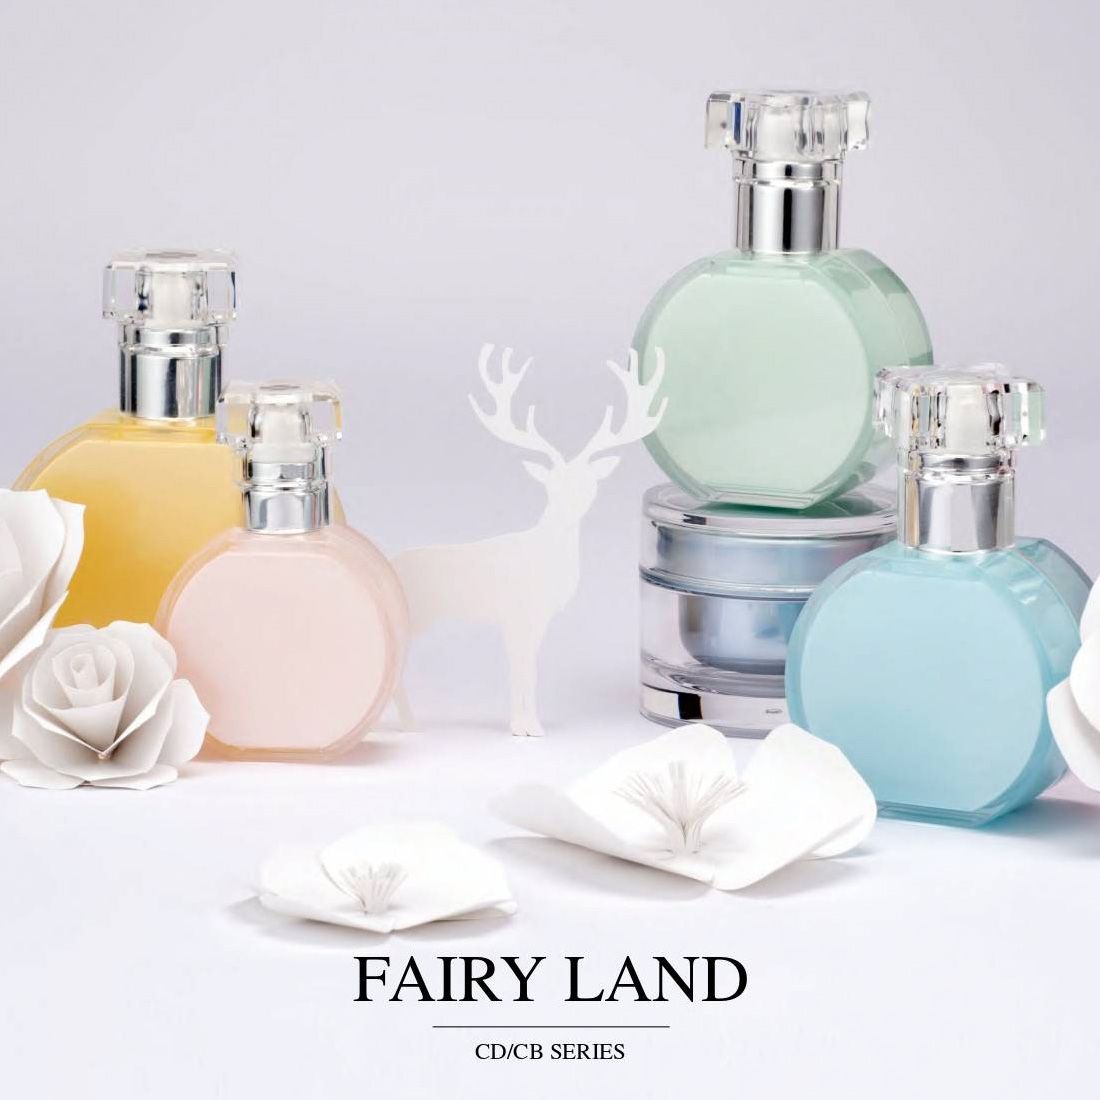 Fairy Land (บรรจุภัณฑ์เครื่องสำอางและผลิตภัณฑ์บำรุงผิวอะคริลิก) ซีดี/ซีบีซีรีส์